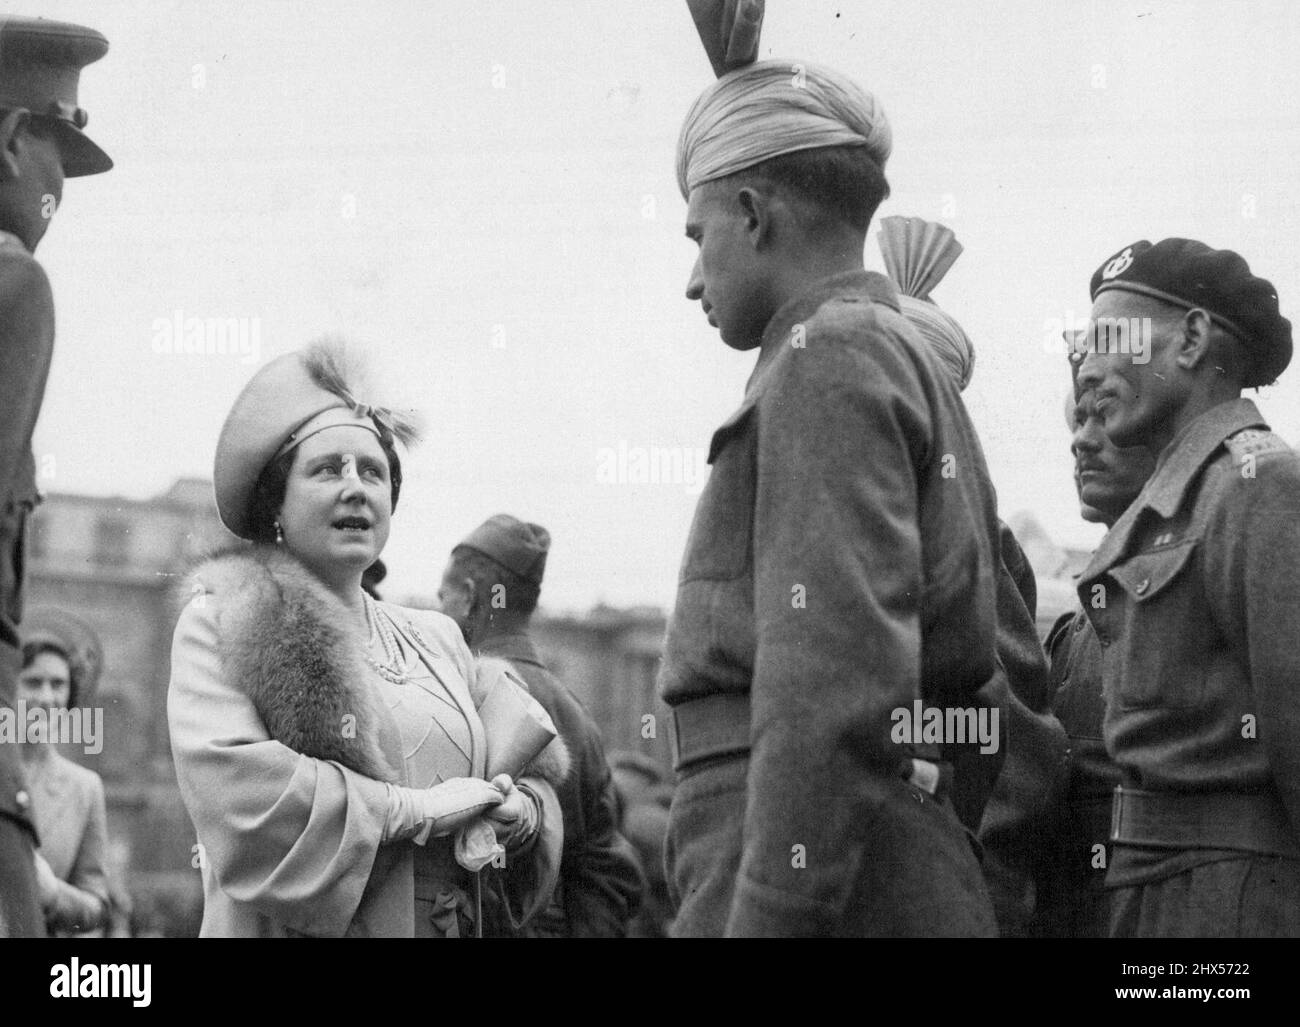 Royal Empire Day Garden Party ***** pows au palais de Buckingham. La Reine demande à un très grand soldat indien, choisi par son officier pour rencontrer sa Majesté, de lui parler de ses expériences de prisonnier de guerre. 24 mai 1945. Banque D'Images